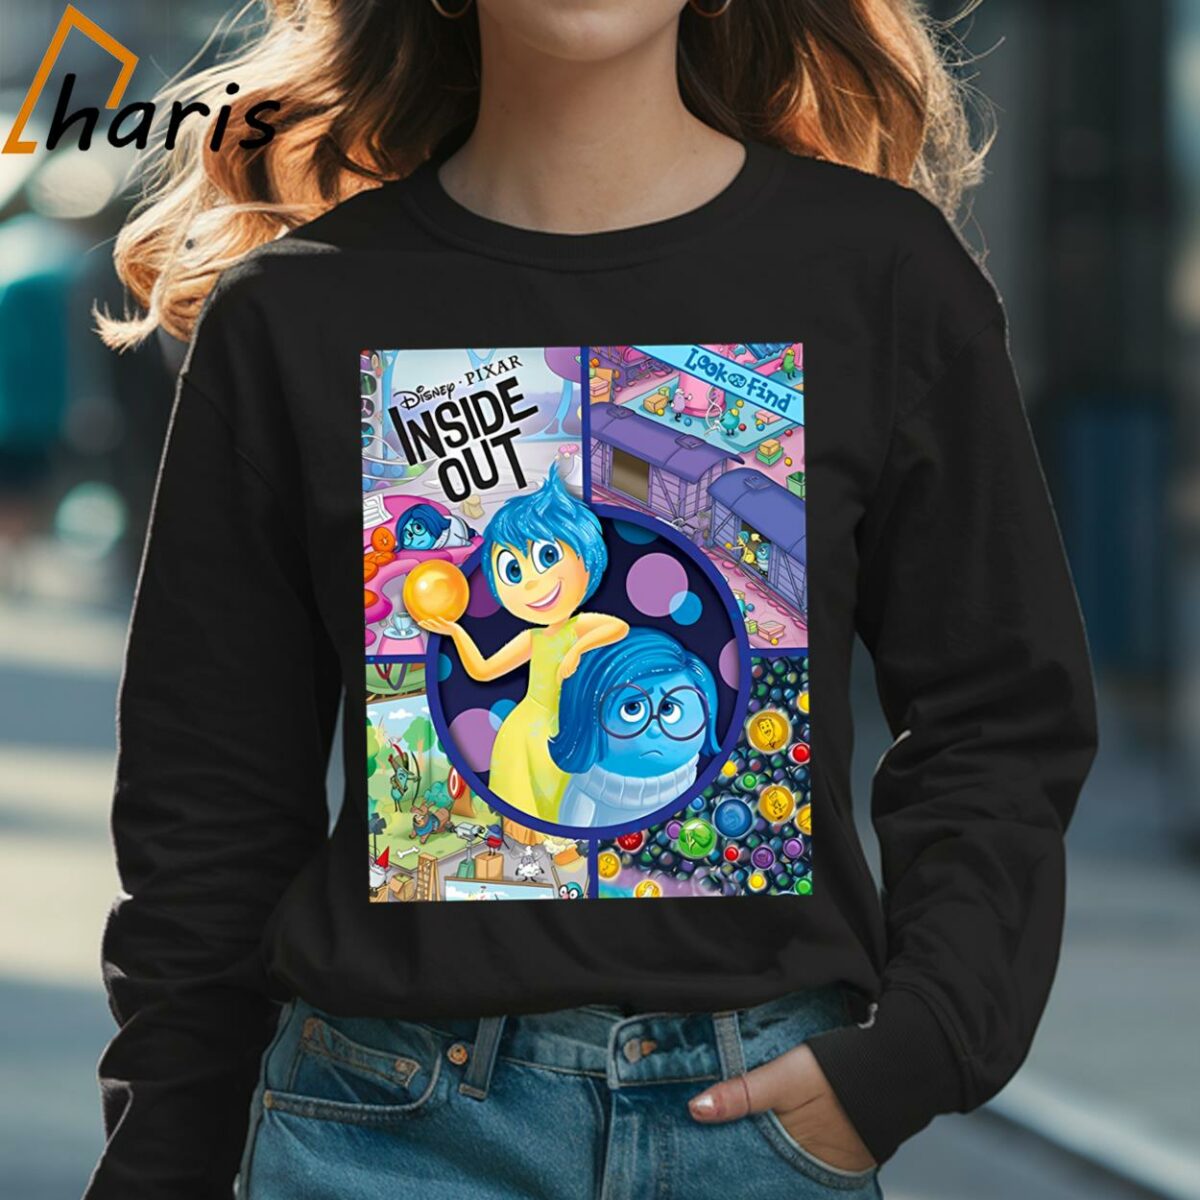 Inside Out 2 Disney Pixar T shirt 3 Long sleeve shirt